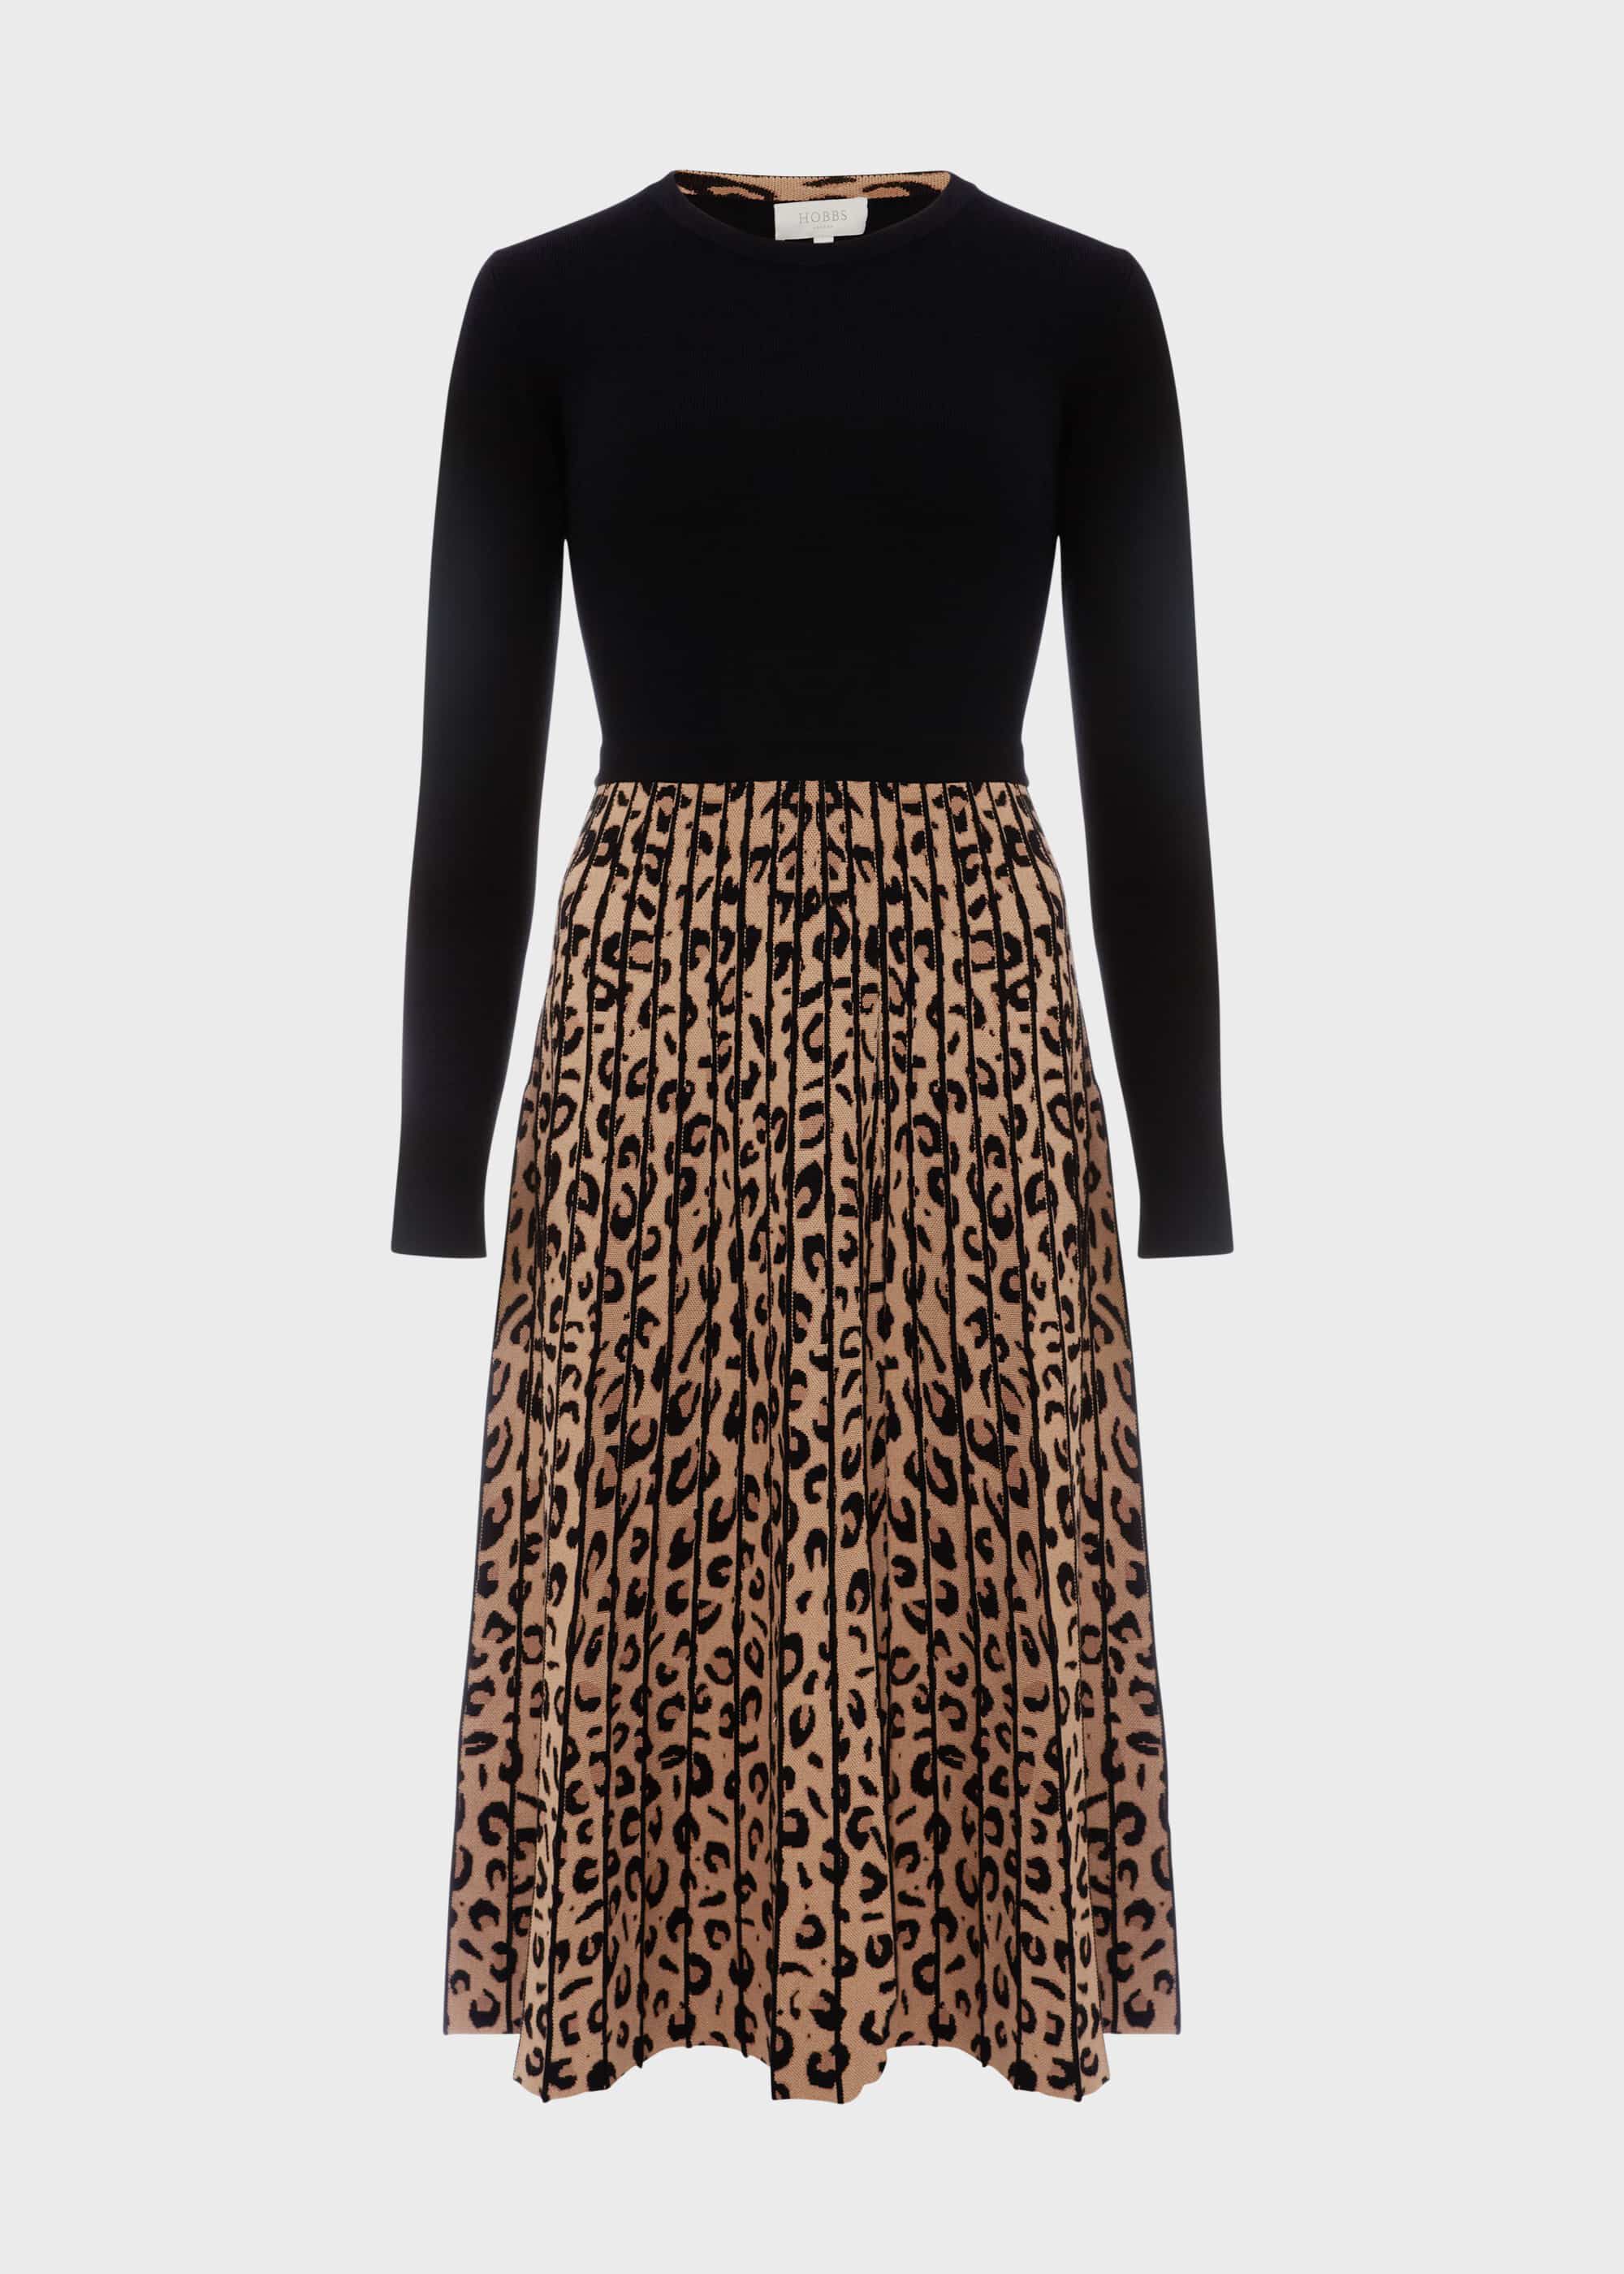 hobbs leopard print skirt